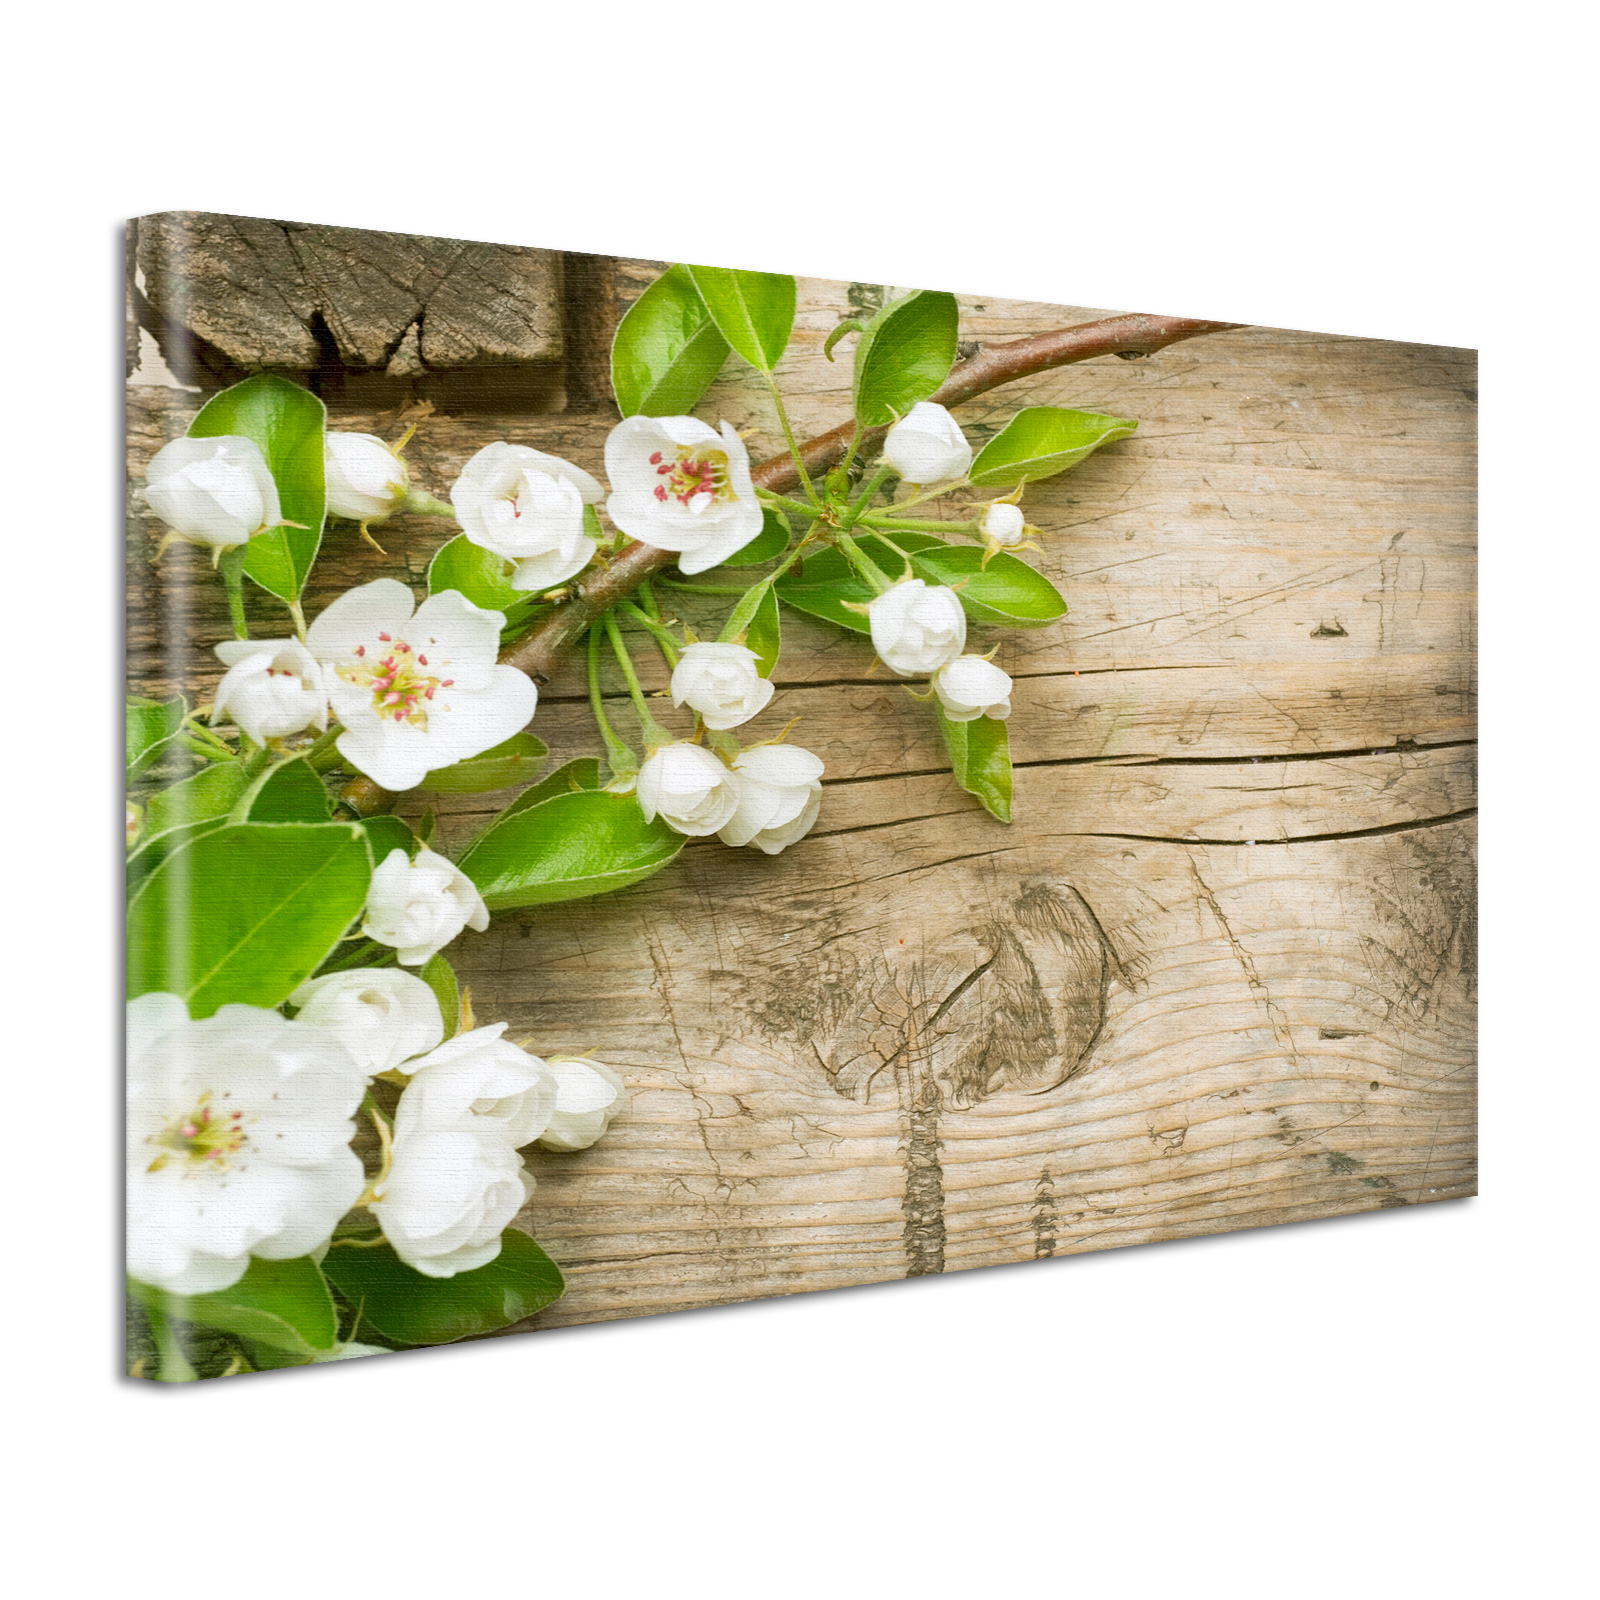 Leinwand Bild Natur & Blumen Apfelblüten auf Holz